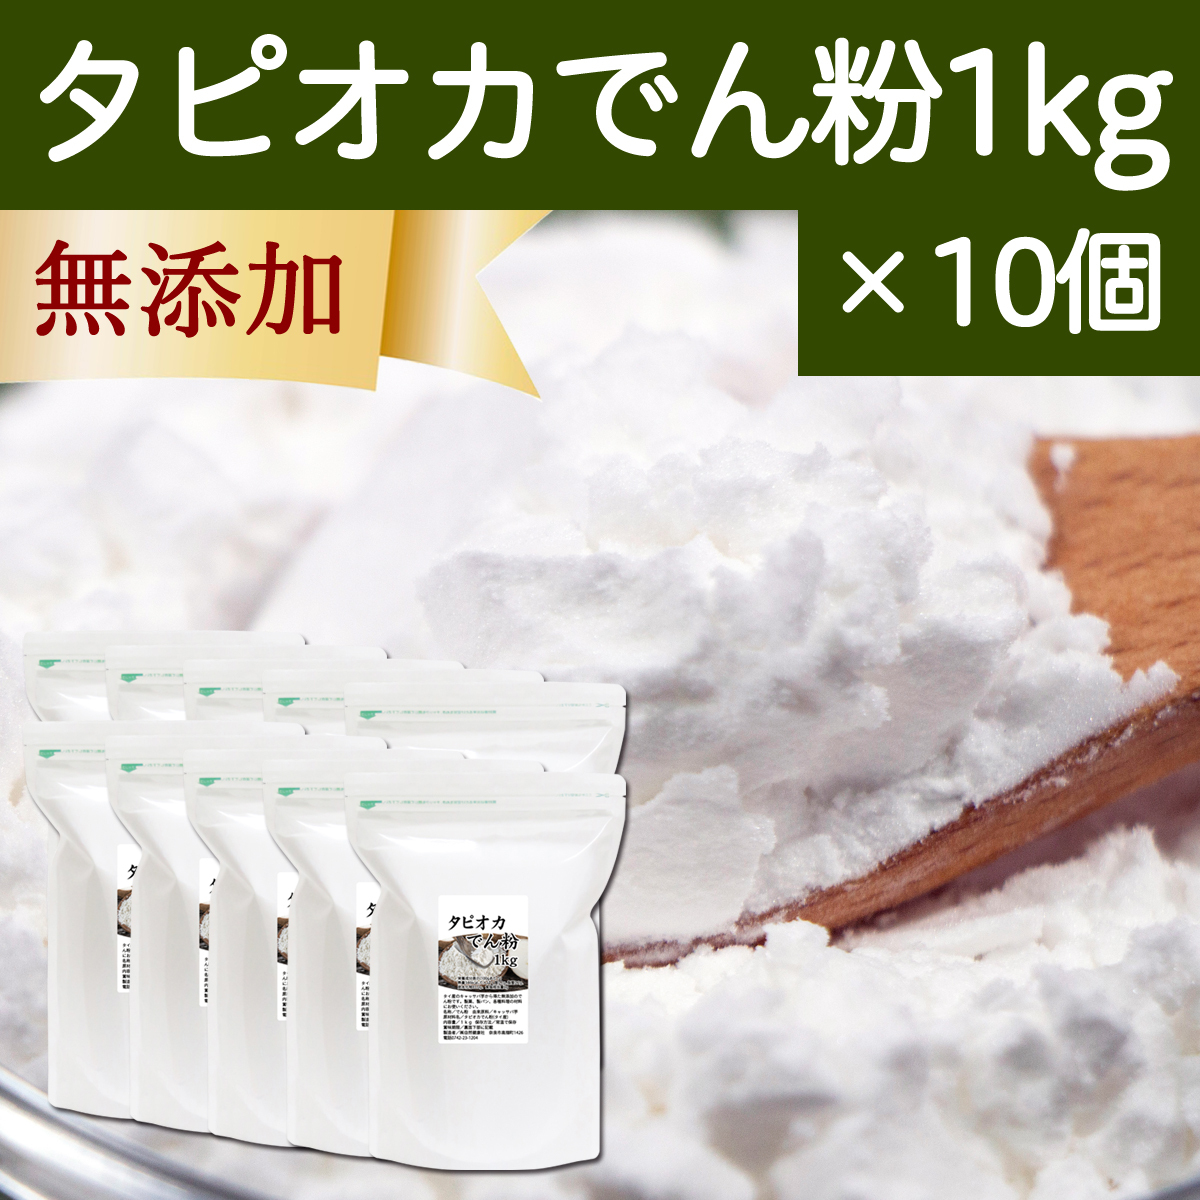 tapioka.. flour 1kg×10 piece tapioka flour tapioka starch starch 100%